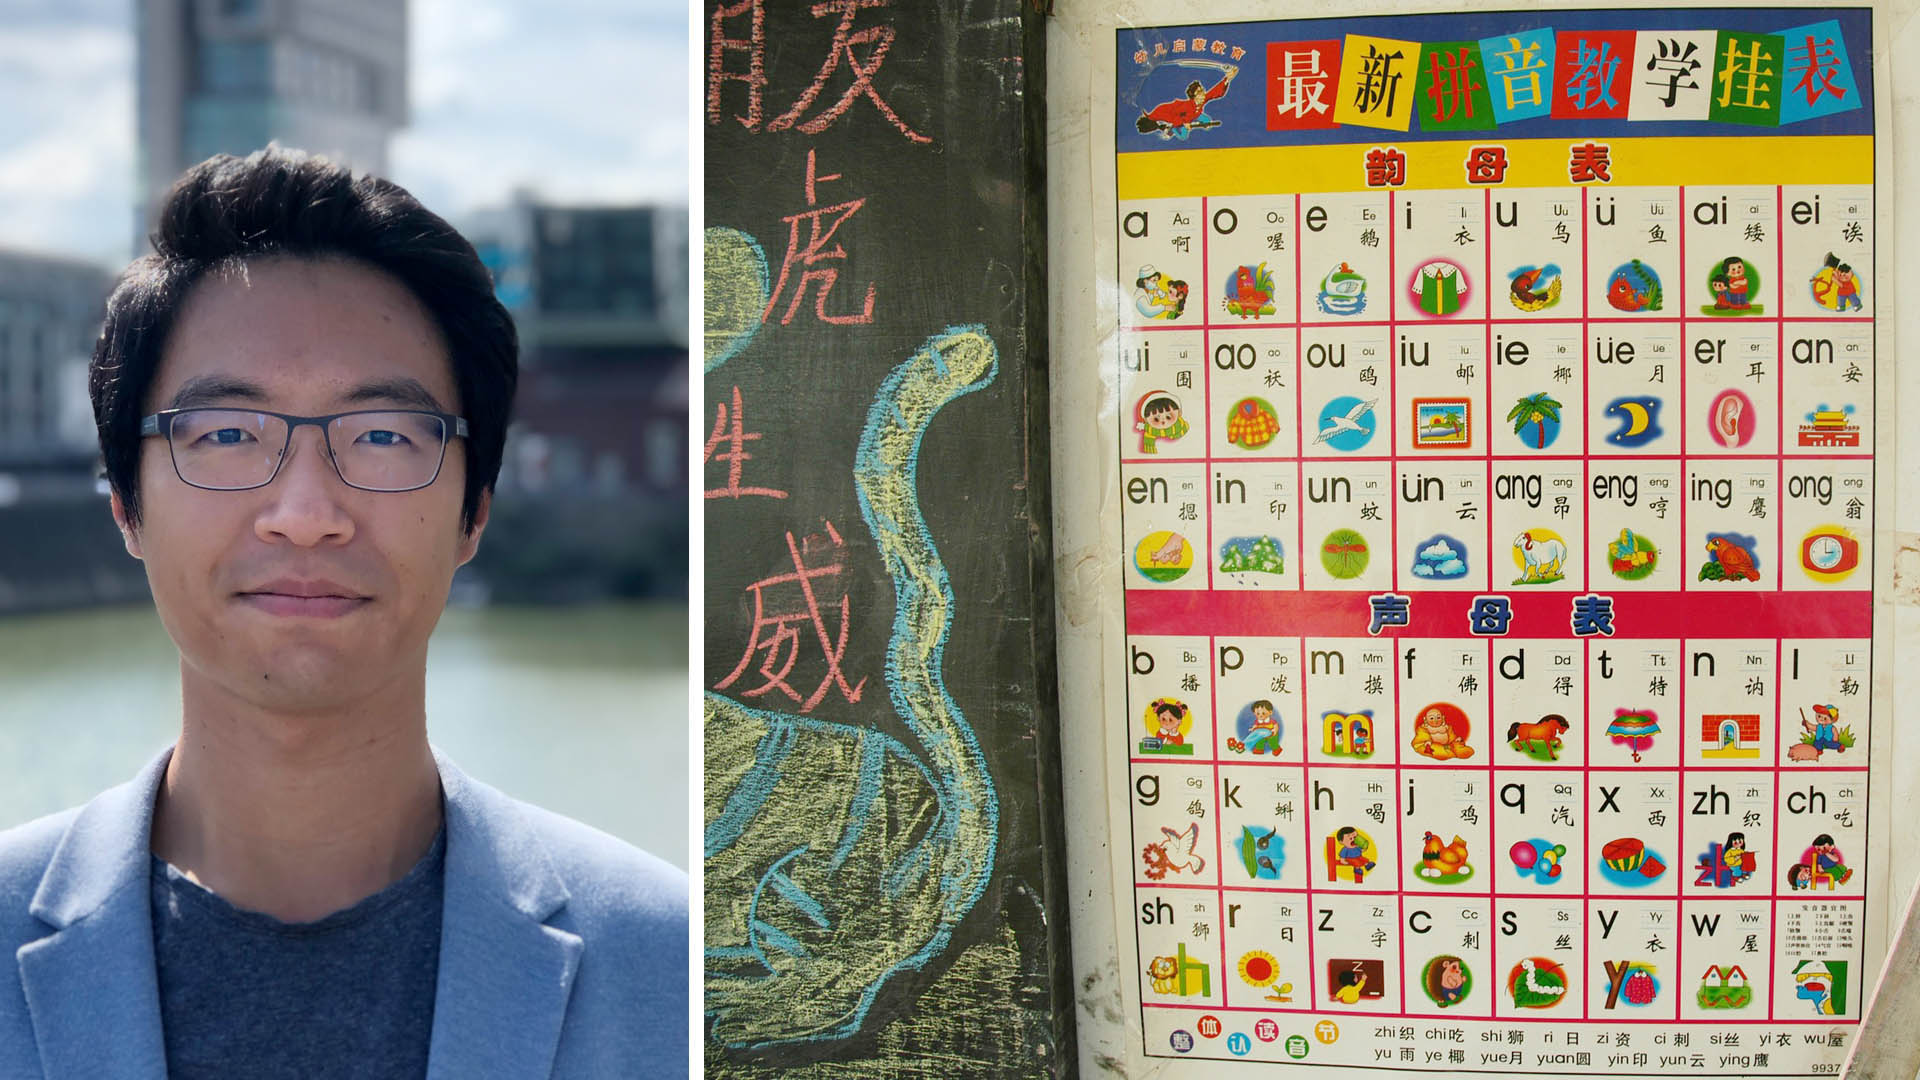 Dr. Zi Wang (l.) und Darstellung lateinischer Buchstaben/Laute mit asiatischer Entsprechung